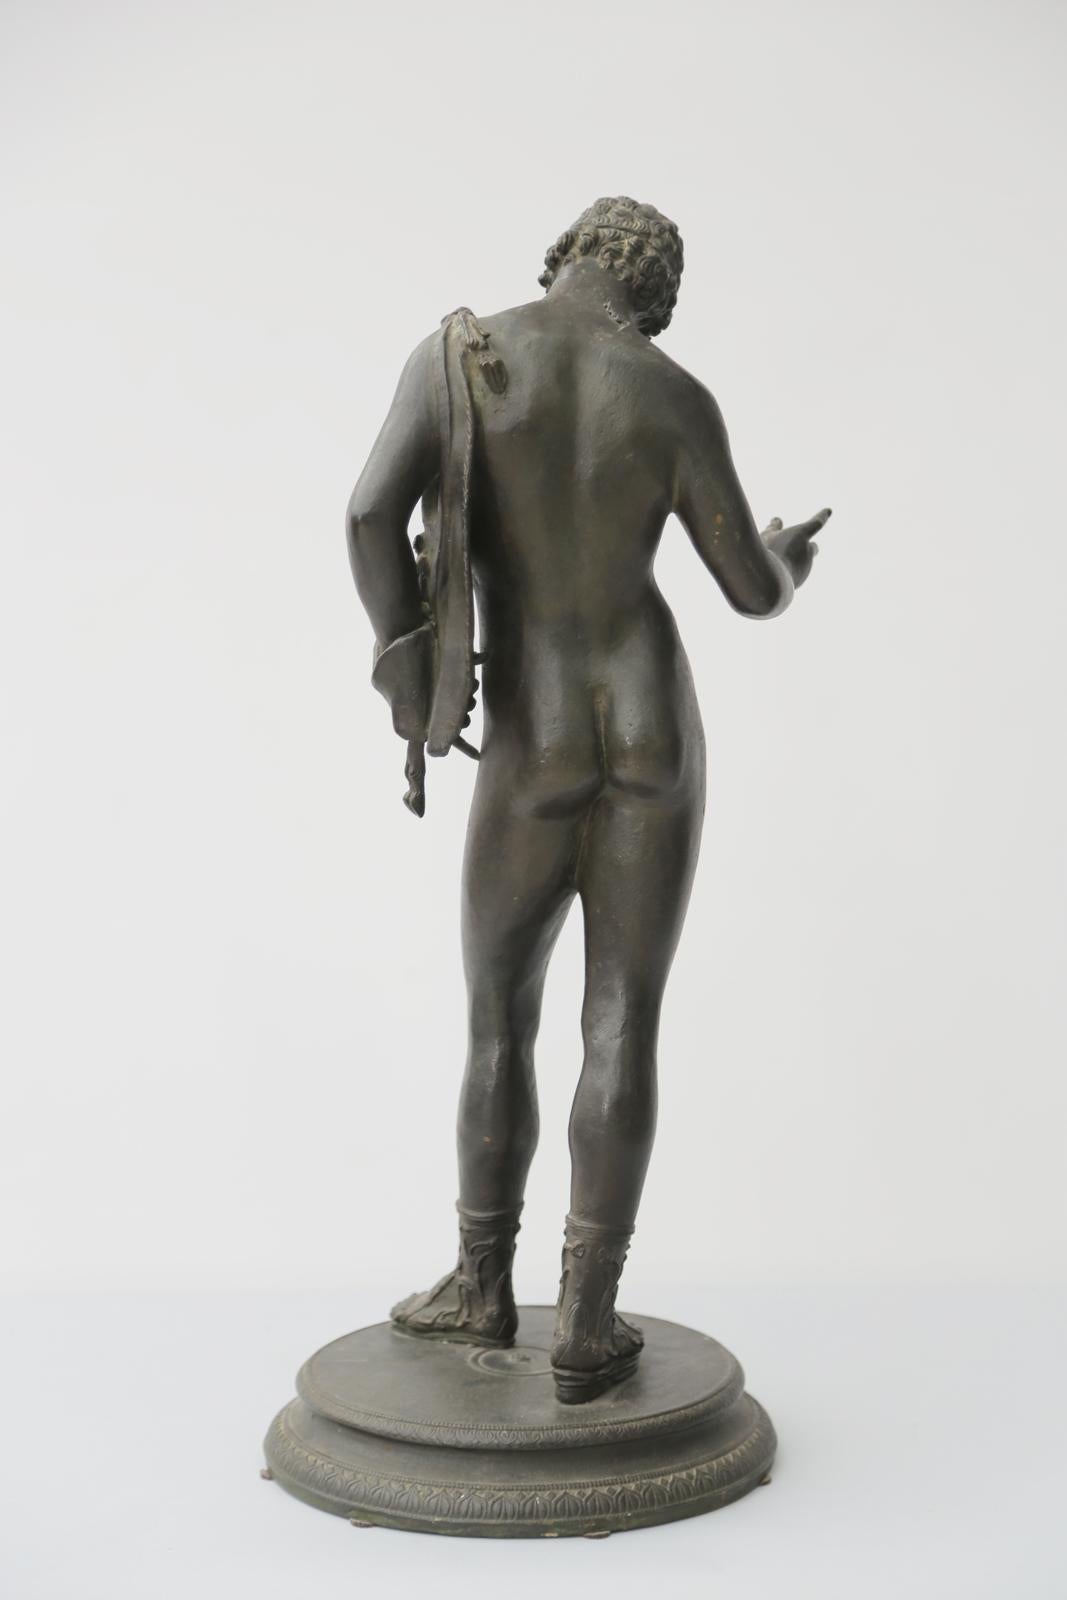 Sculpture en bronze gréco-romaine de Narcisse, d'après la sculpture originale exhumée en 1862 à Pompéi. La figure en bronze patiné vert représente le fils mythologique du dieu fleuve Cephissus et de la nymphe Liriope, posant debout, nu, portant des